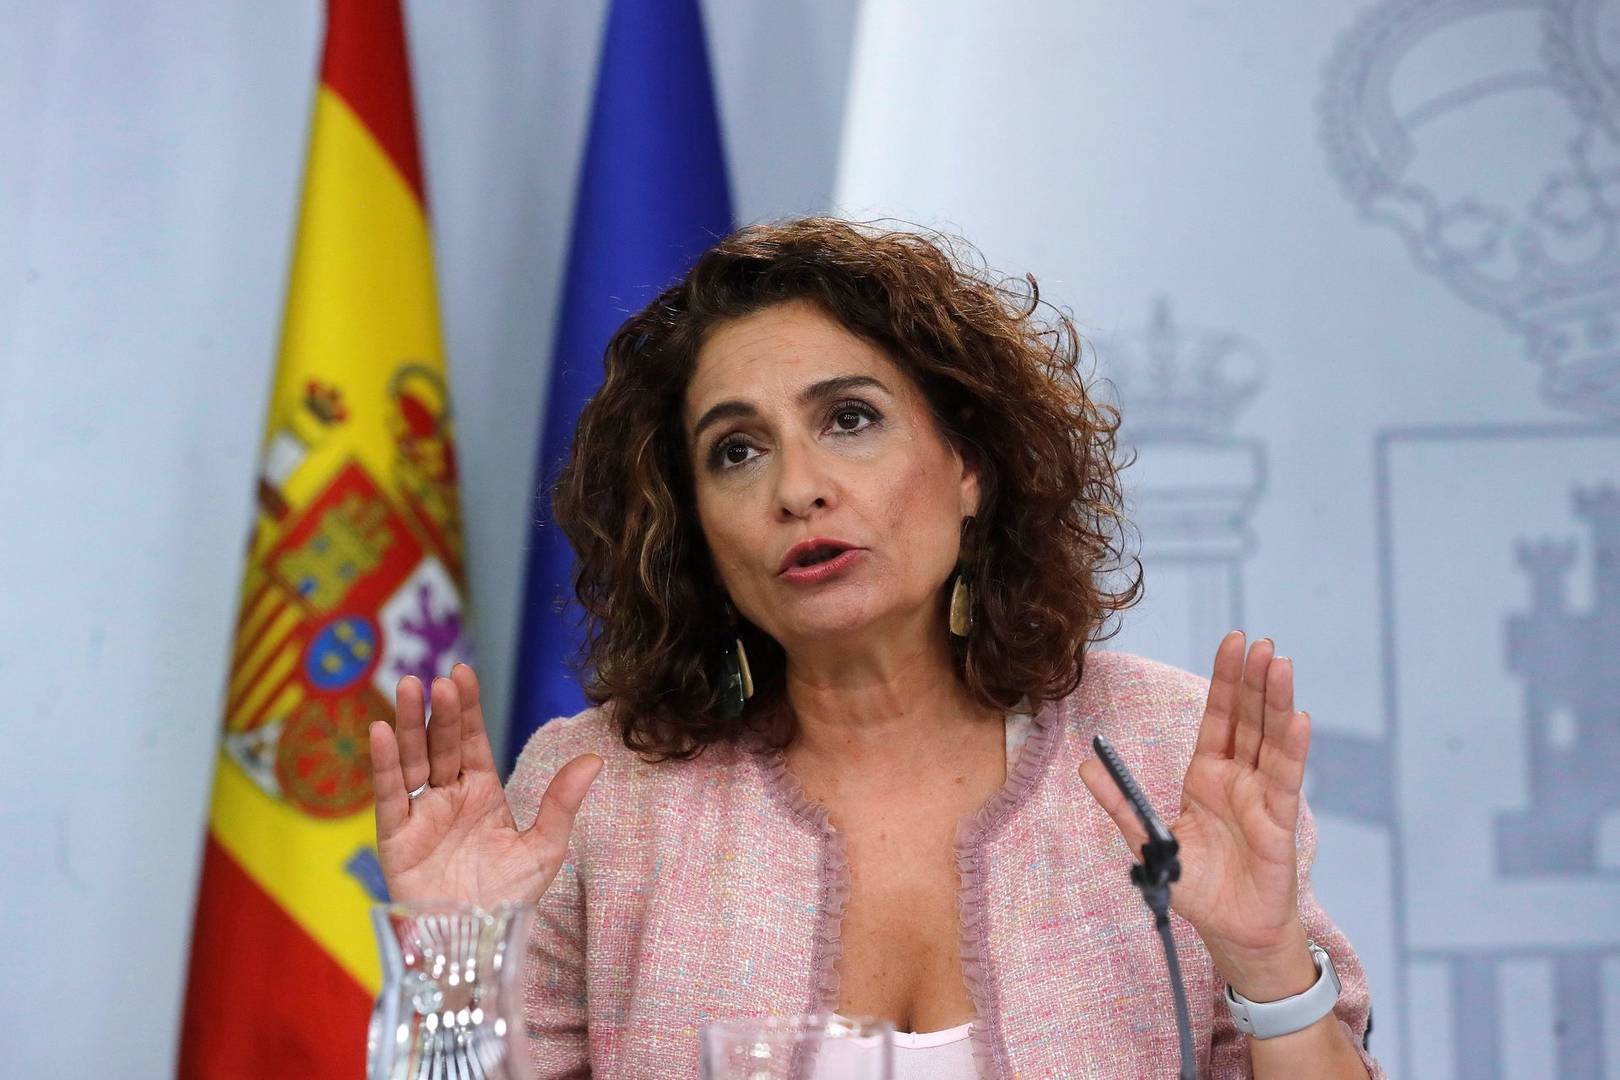 La ministra portavoz, María Jesús Montero, ha anunciado el IVA de las mascarillas / Libertad Digital